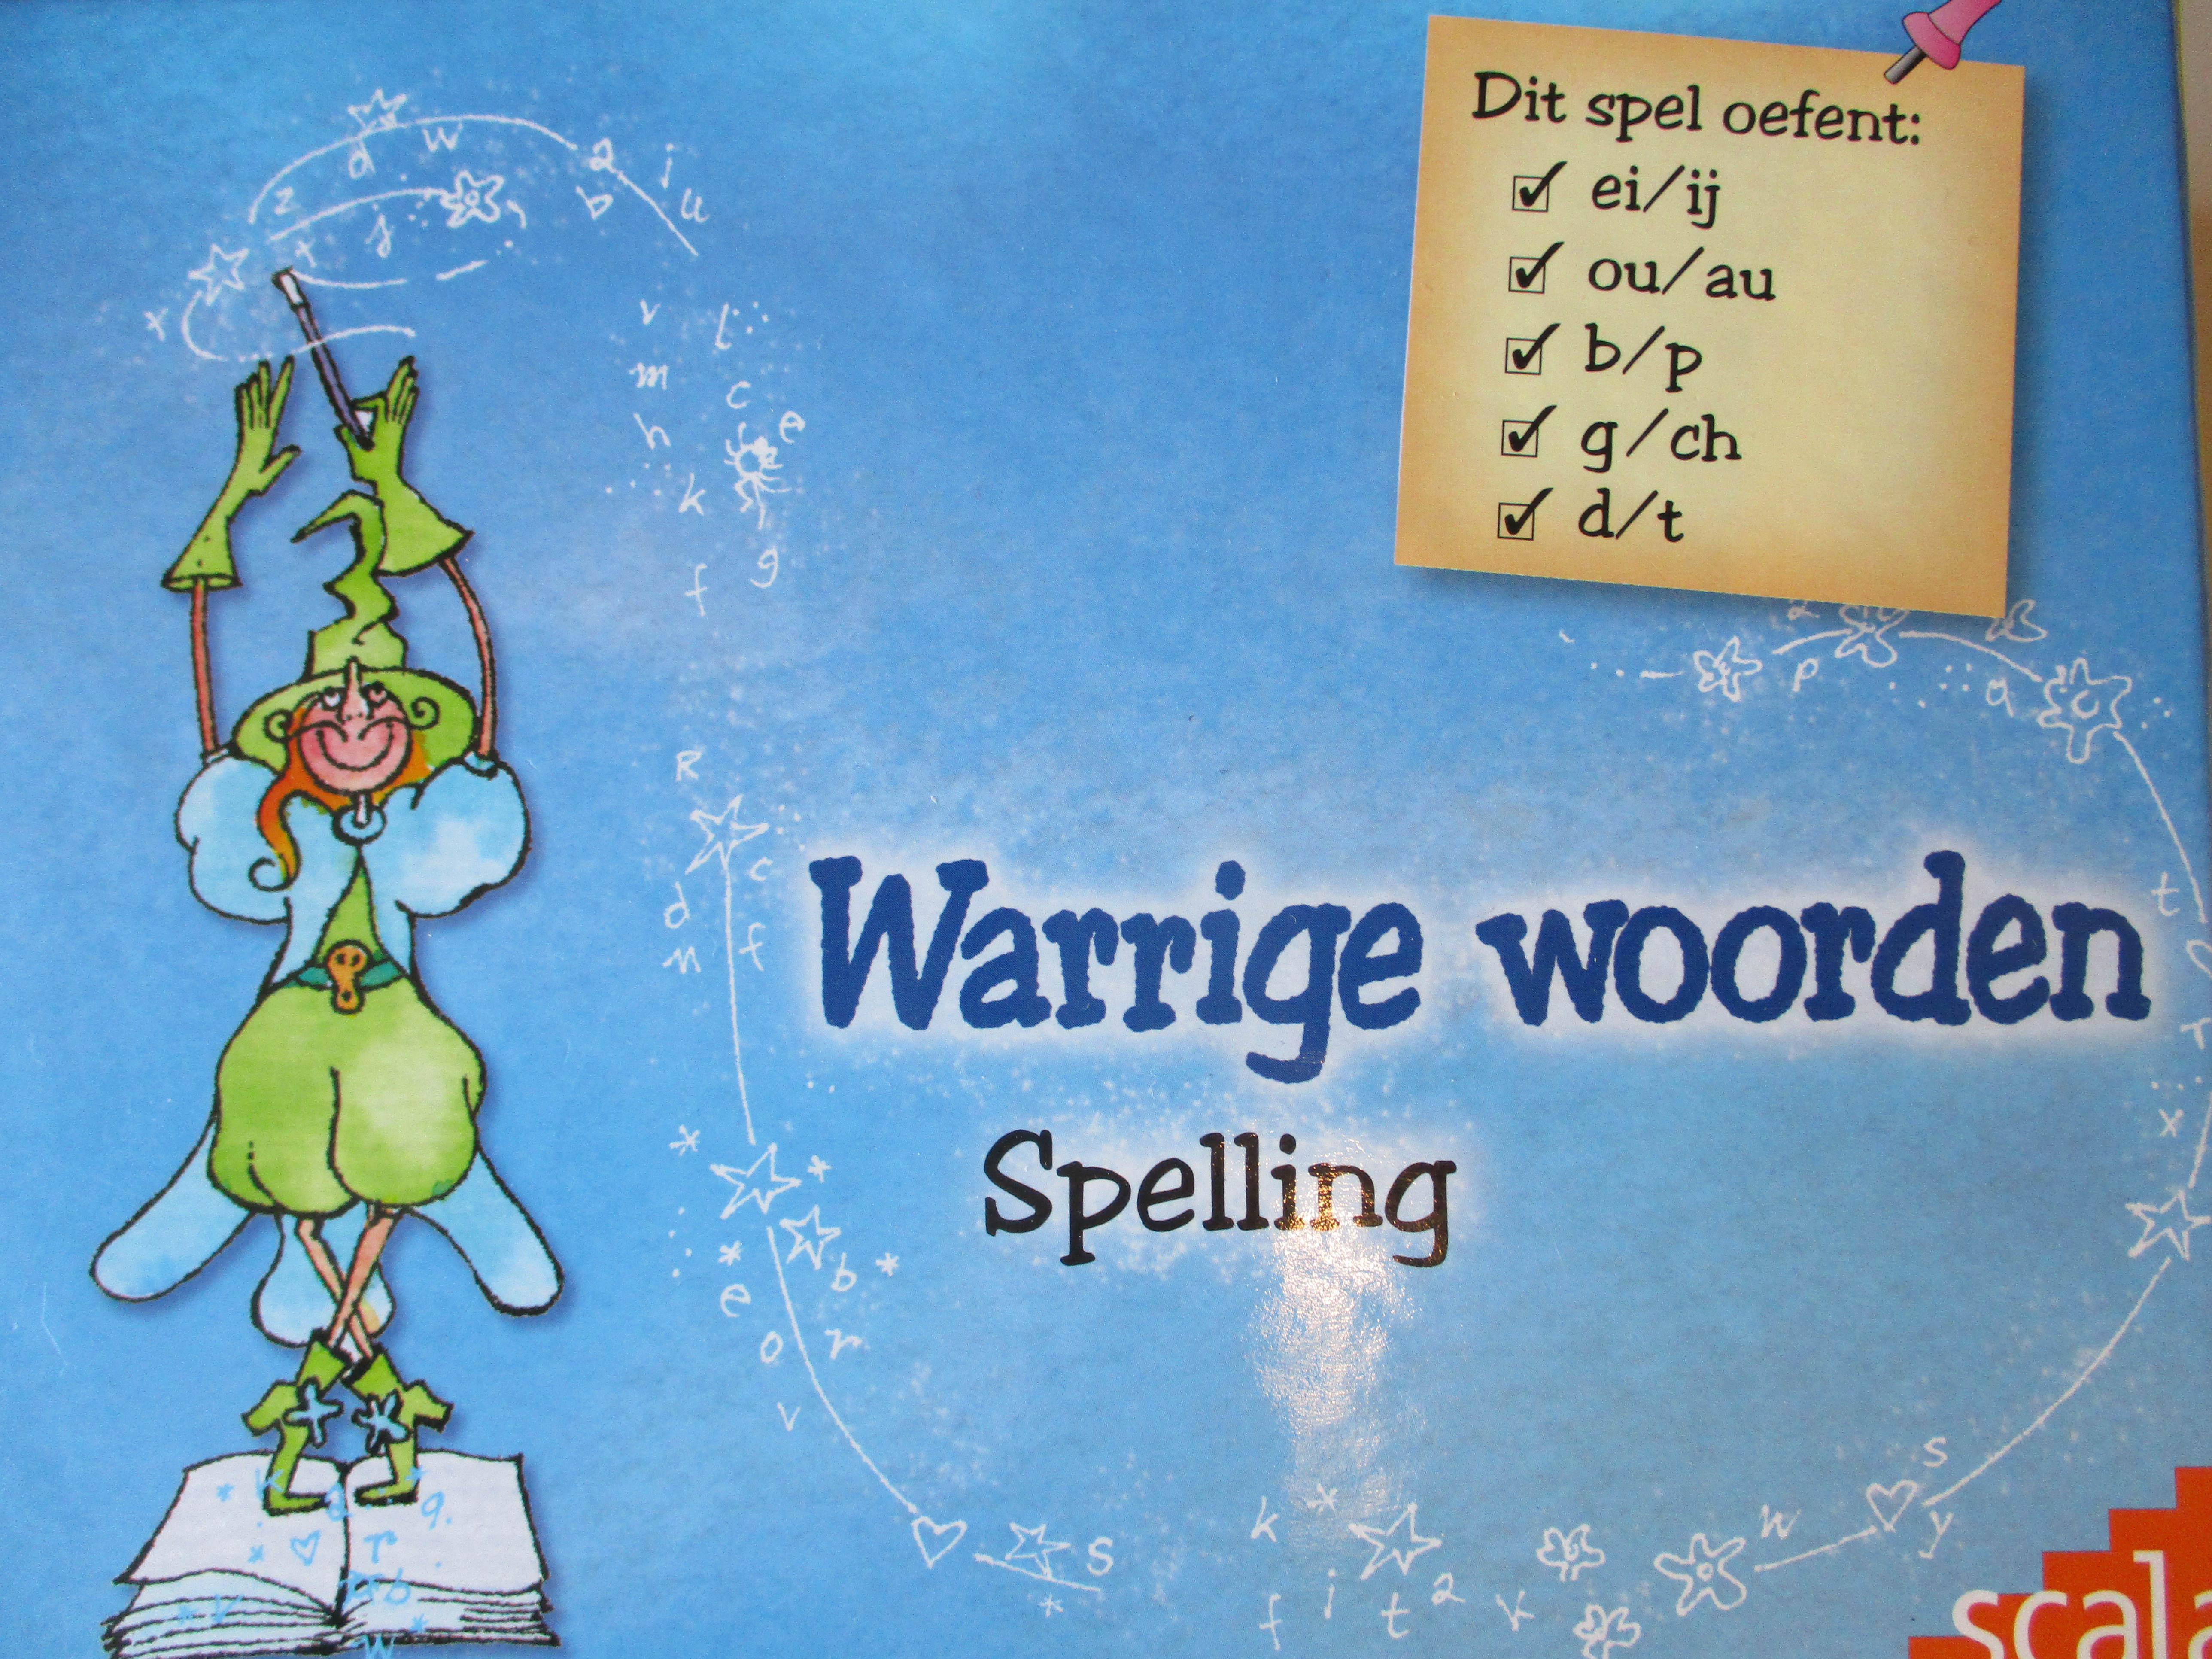 Je bekijkt nu Review: Warrige woorden Spelling